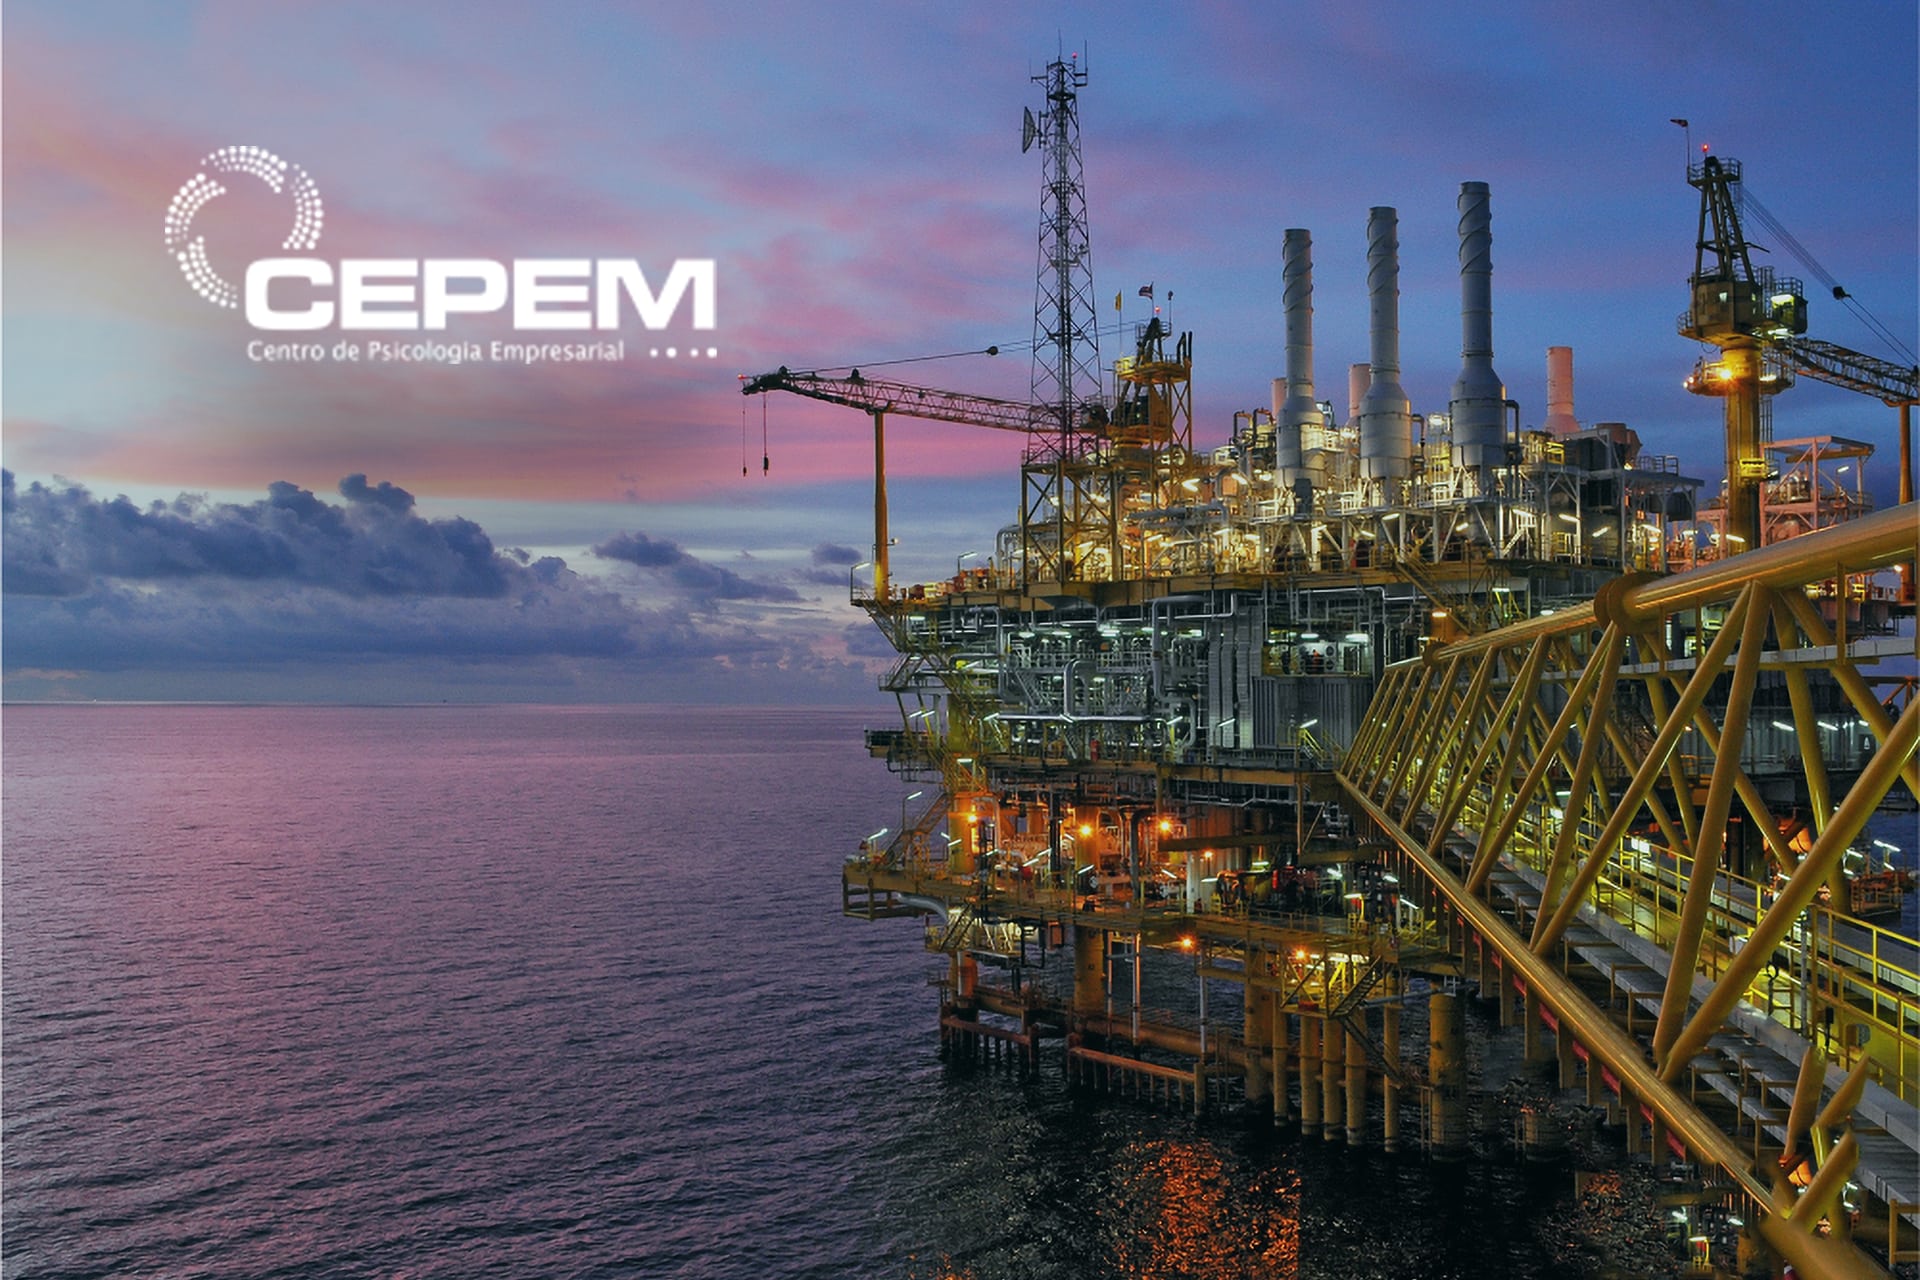 Está em busca de novas oportunidades no setor marítimo? A CEPEM possui vagas de emprego disponíveis para profissionais com experiência.